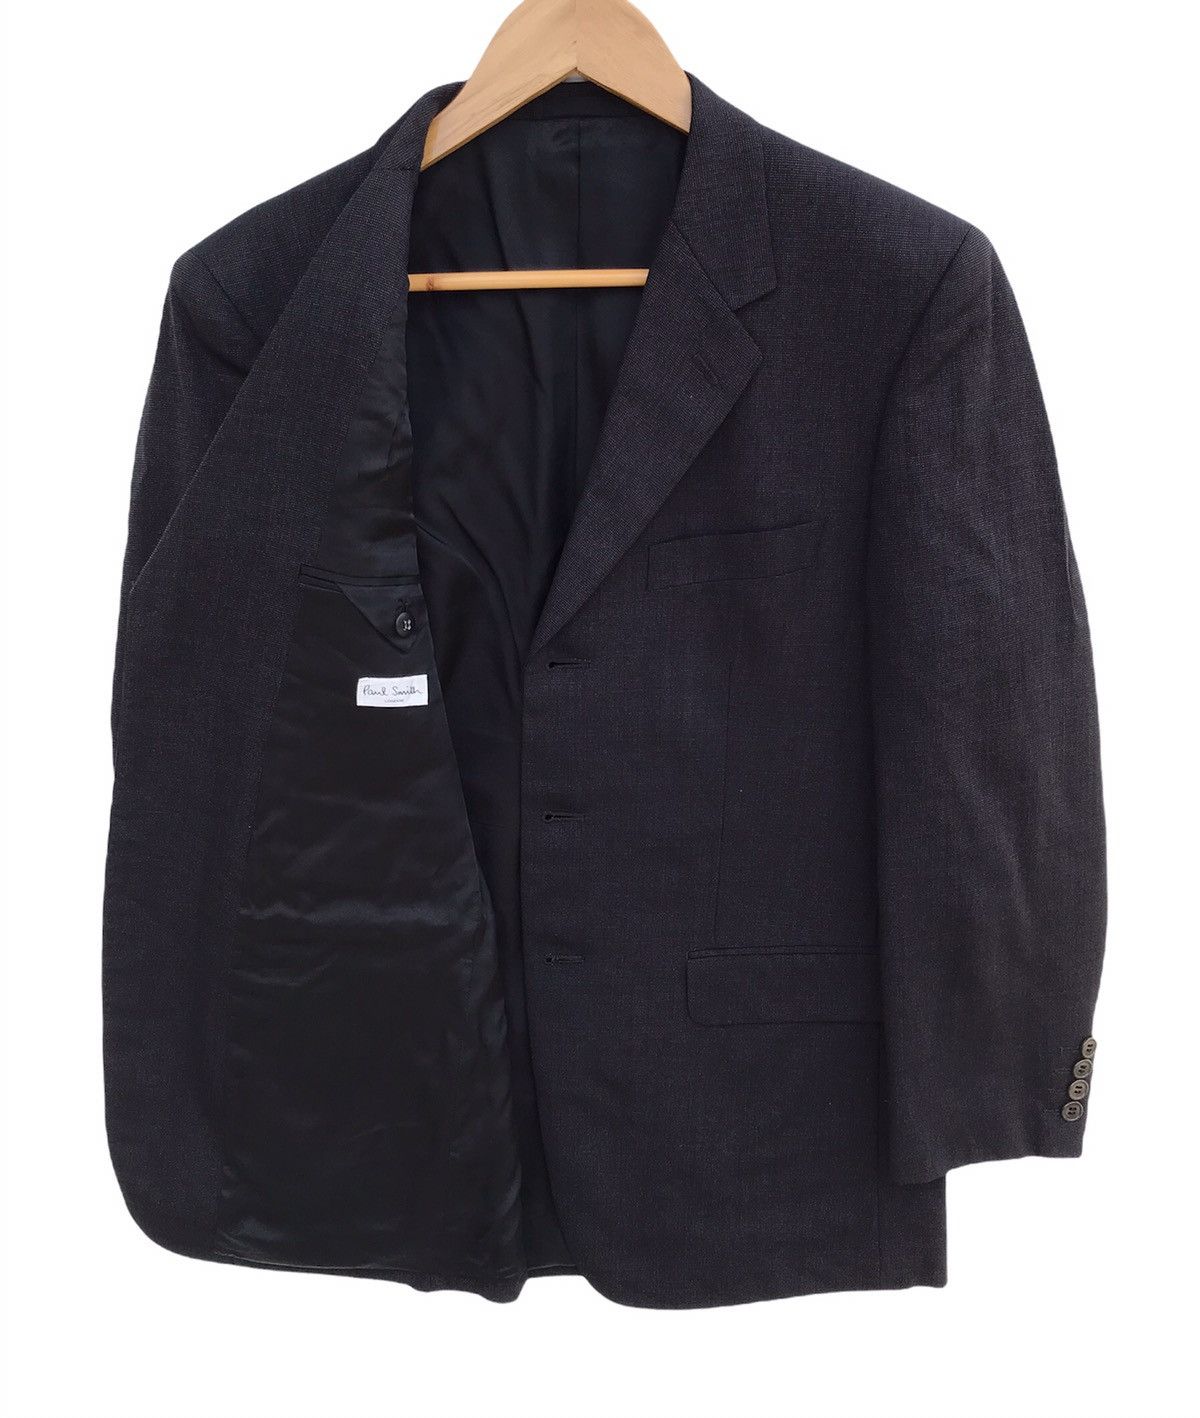 Paul smith Suit Jacket - 4